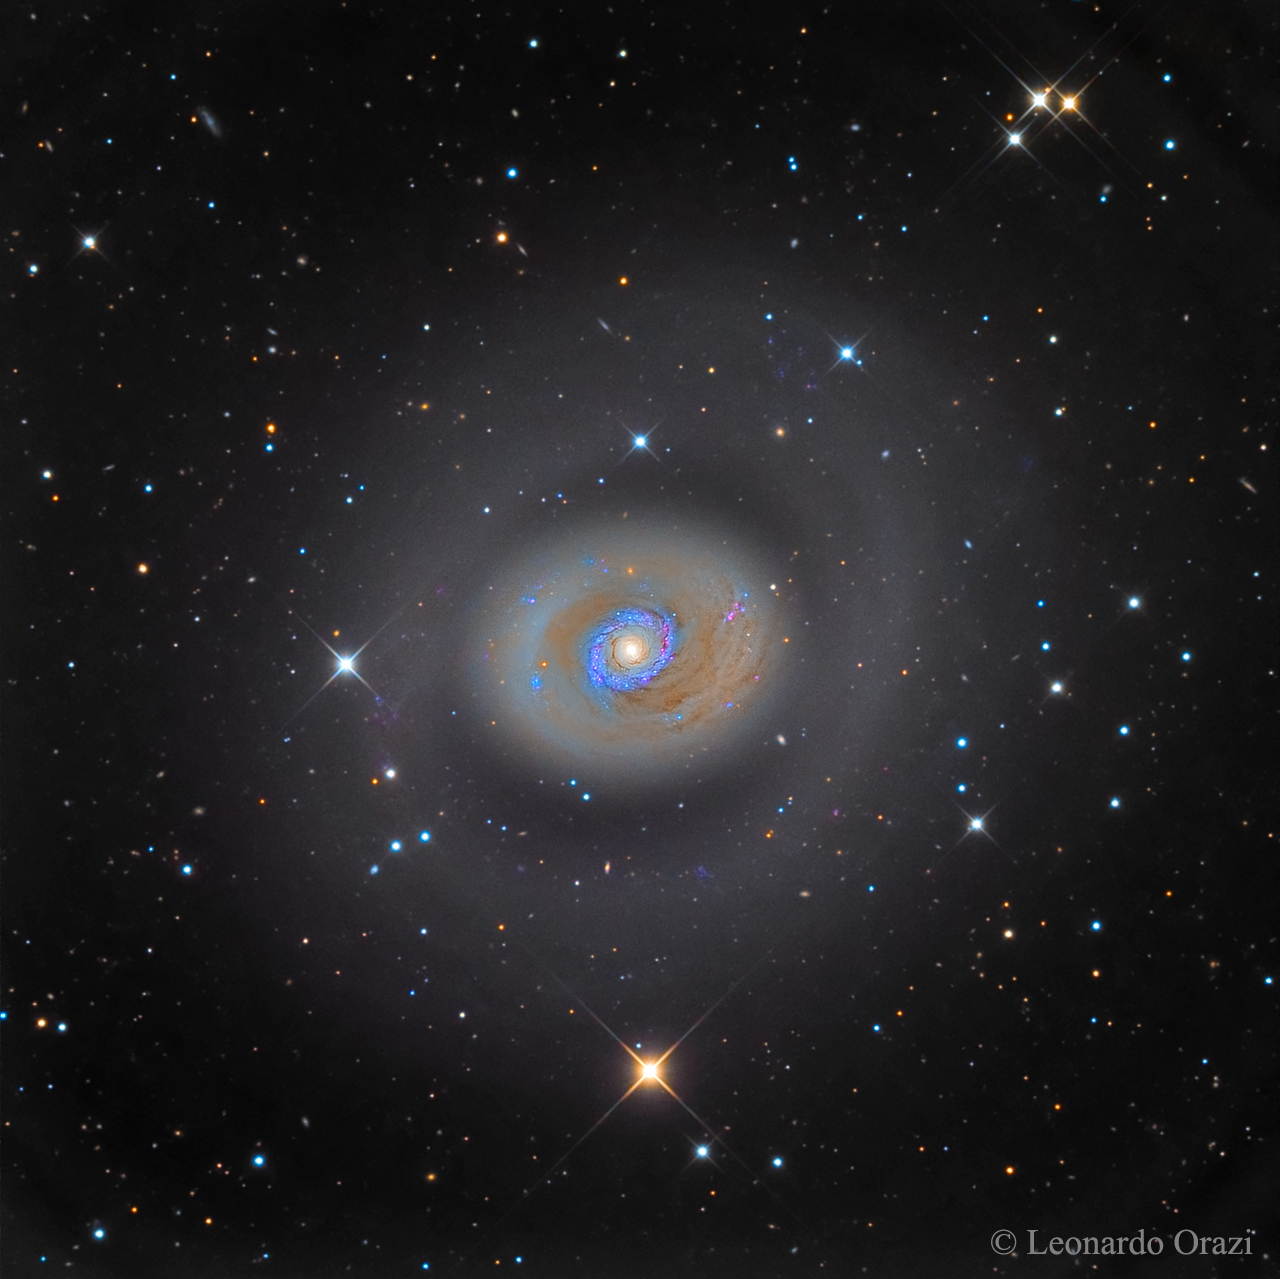 M94 &mdash; galaktika s intensivnym zvezdoobrazovaniem